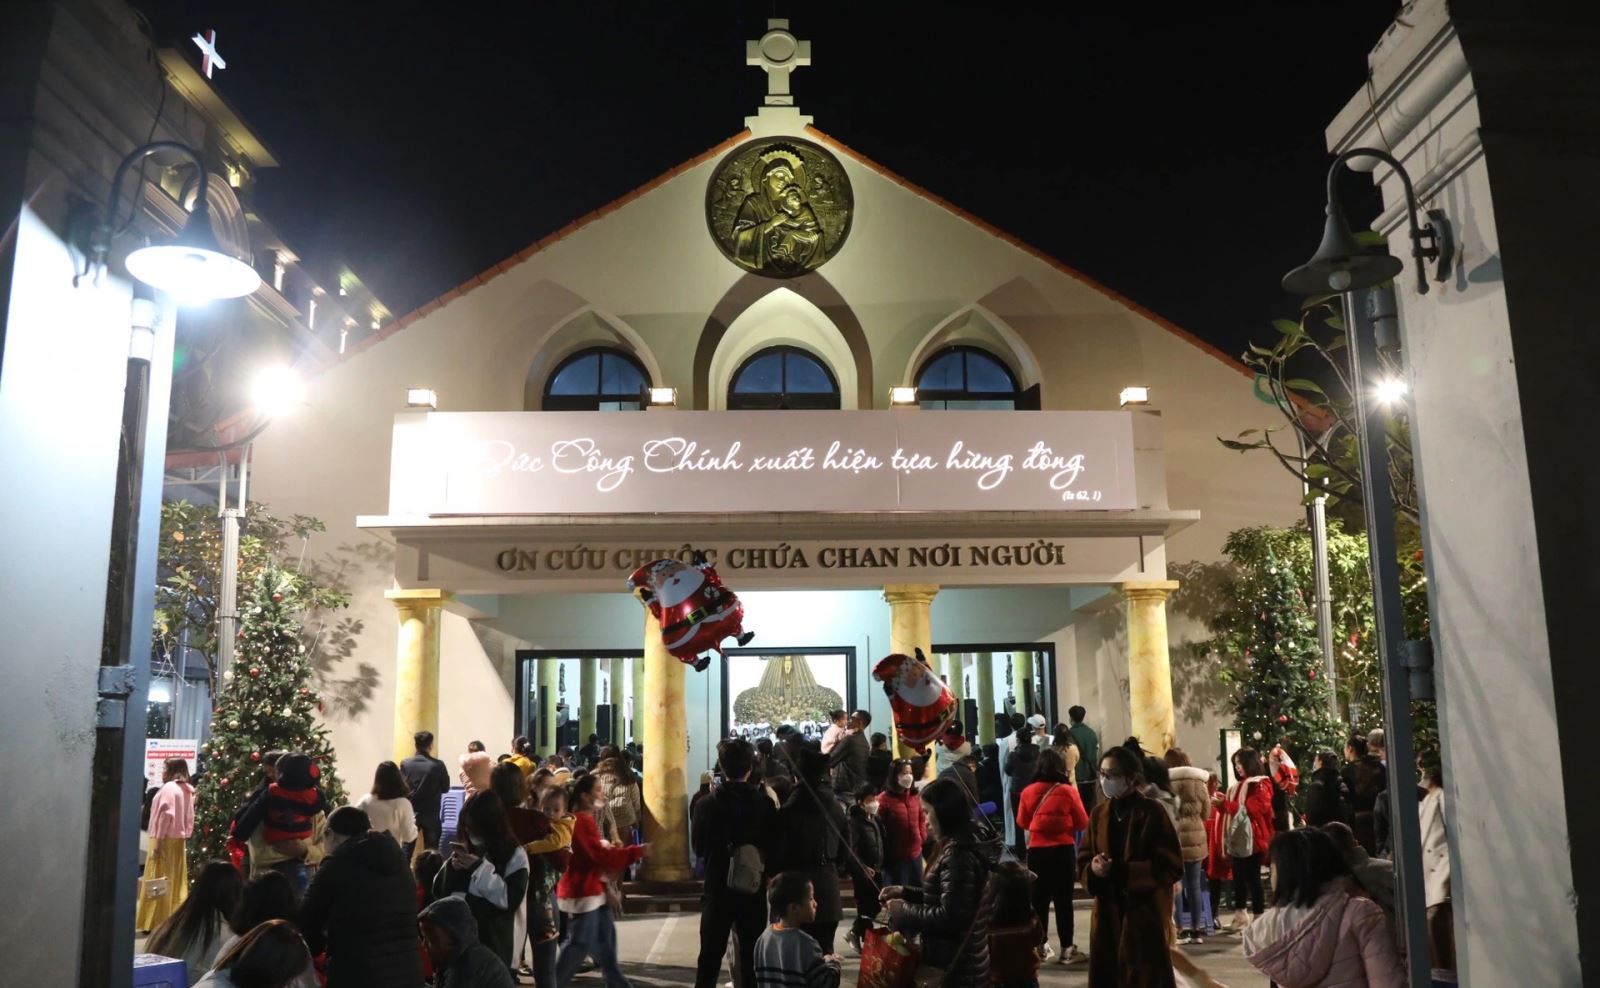 Khu vực nhà thờ giáo xứ Thái Hà đón khá đông giáo dân đến làm lễ trong trật tự và an lành (Ảnh: Hữu Nghị).